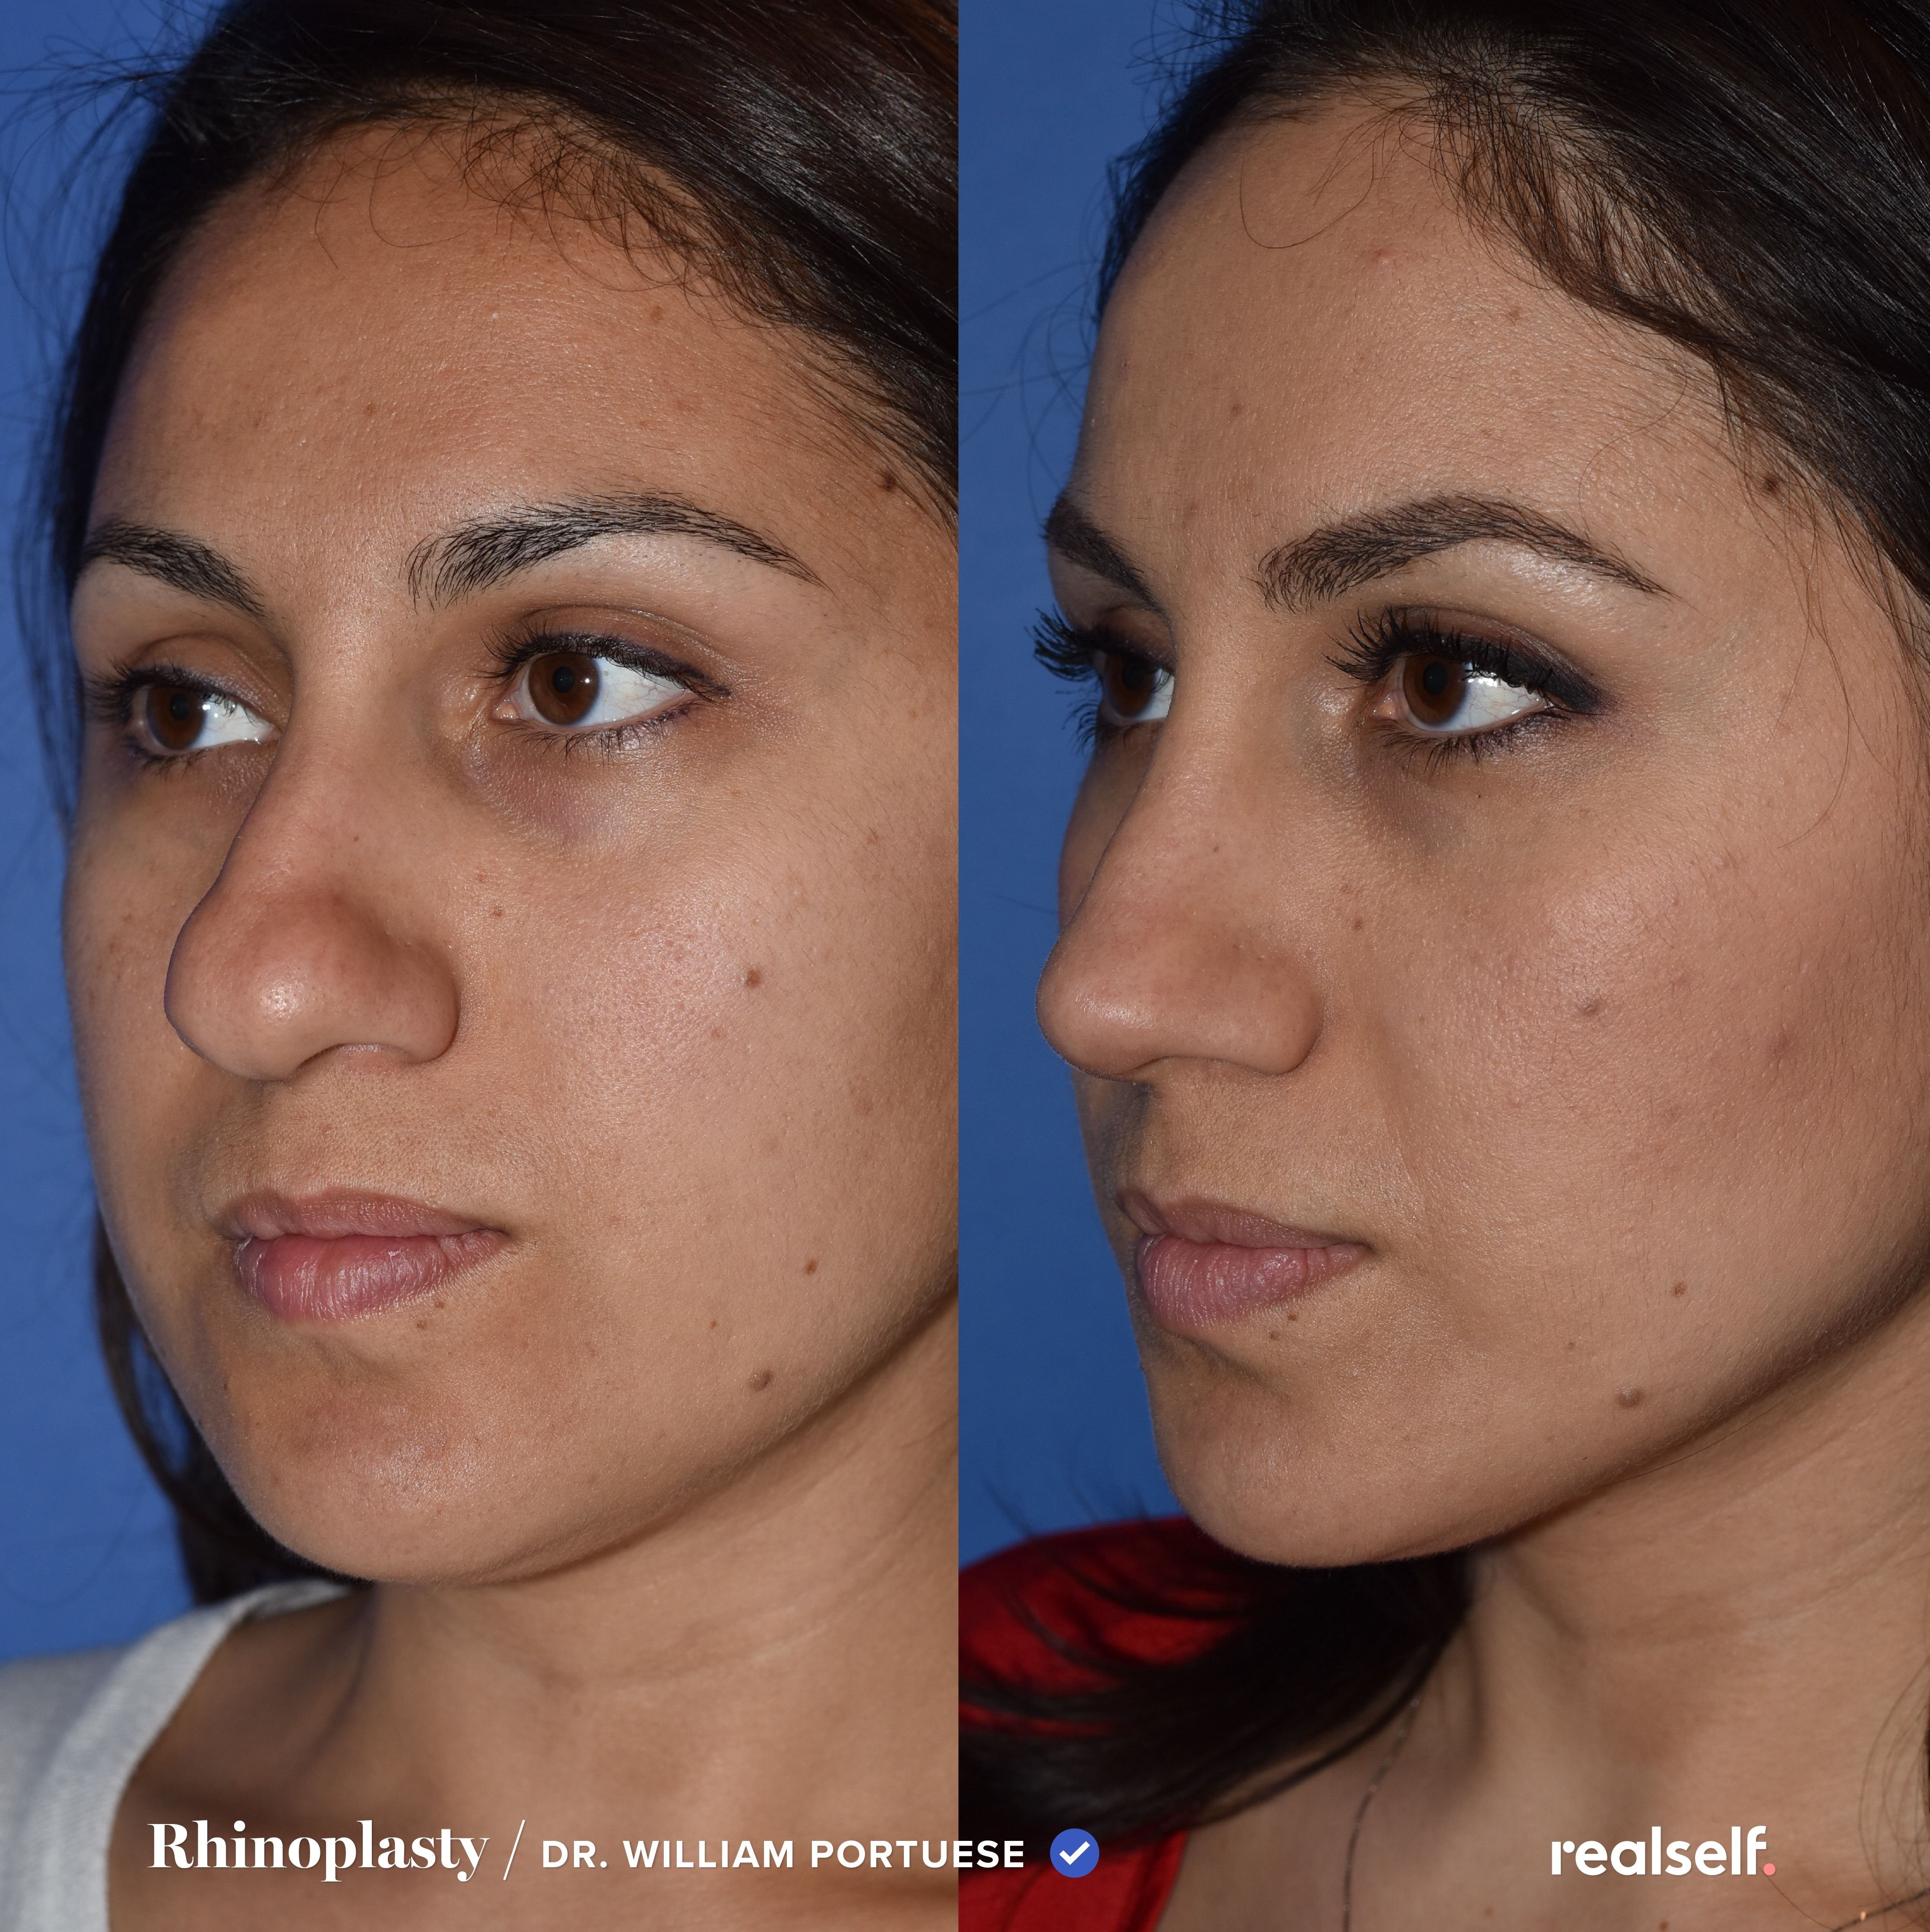 Ринопластика - фото до и после, как проходит операция на нос и как подготовиться к ринопластике